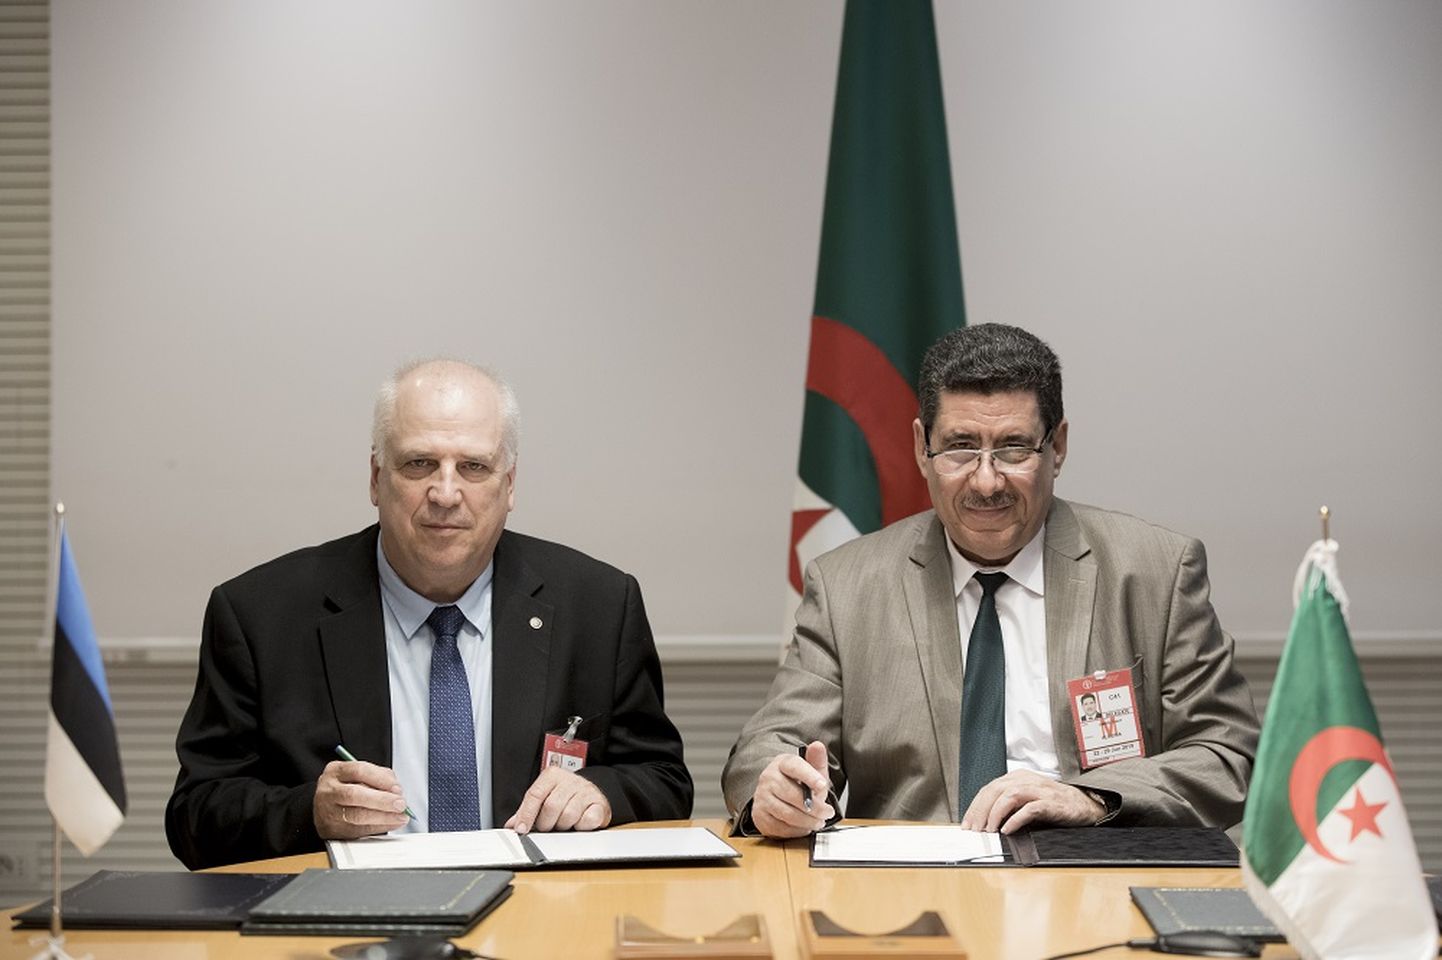 Kohtumisel Alžeeria põllumajanduse ja maaelu arengu minister Chérif Omariga allkirjastati vastastikuse mõistmise memorandum põllumajanduse ja kalanduse osas.